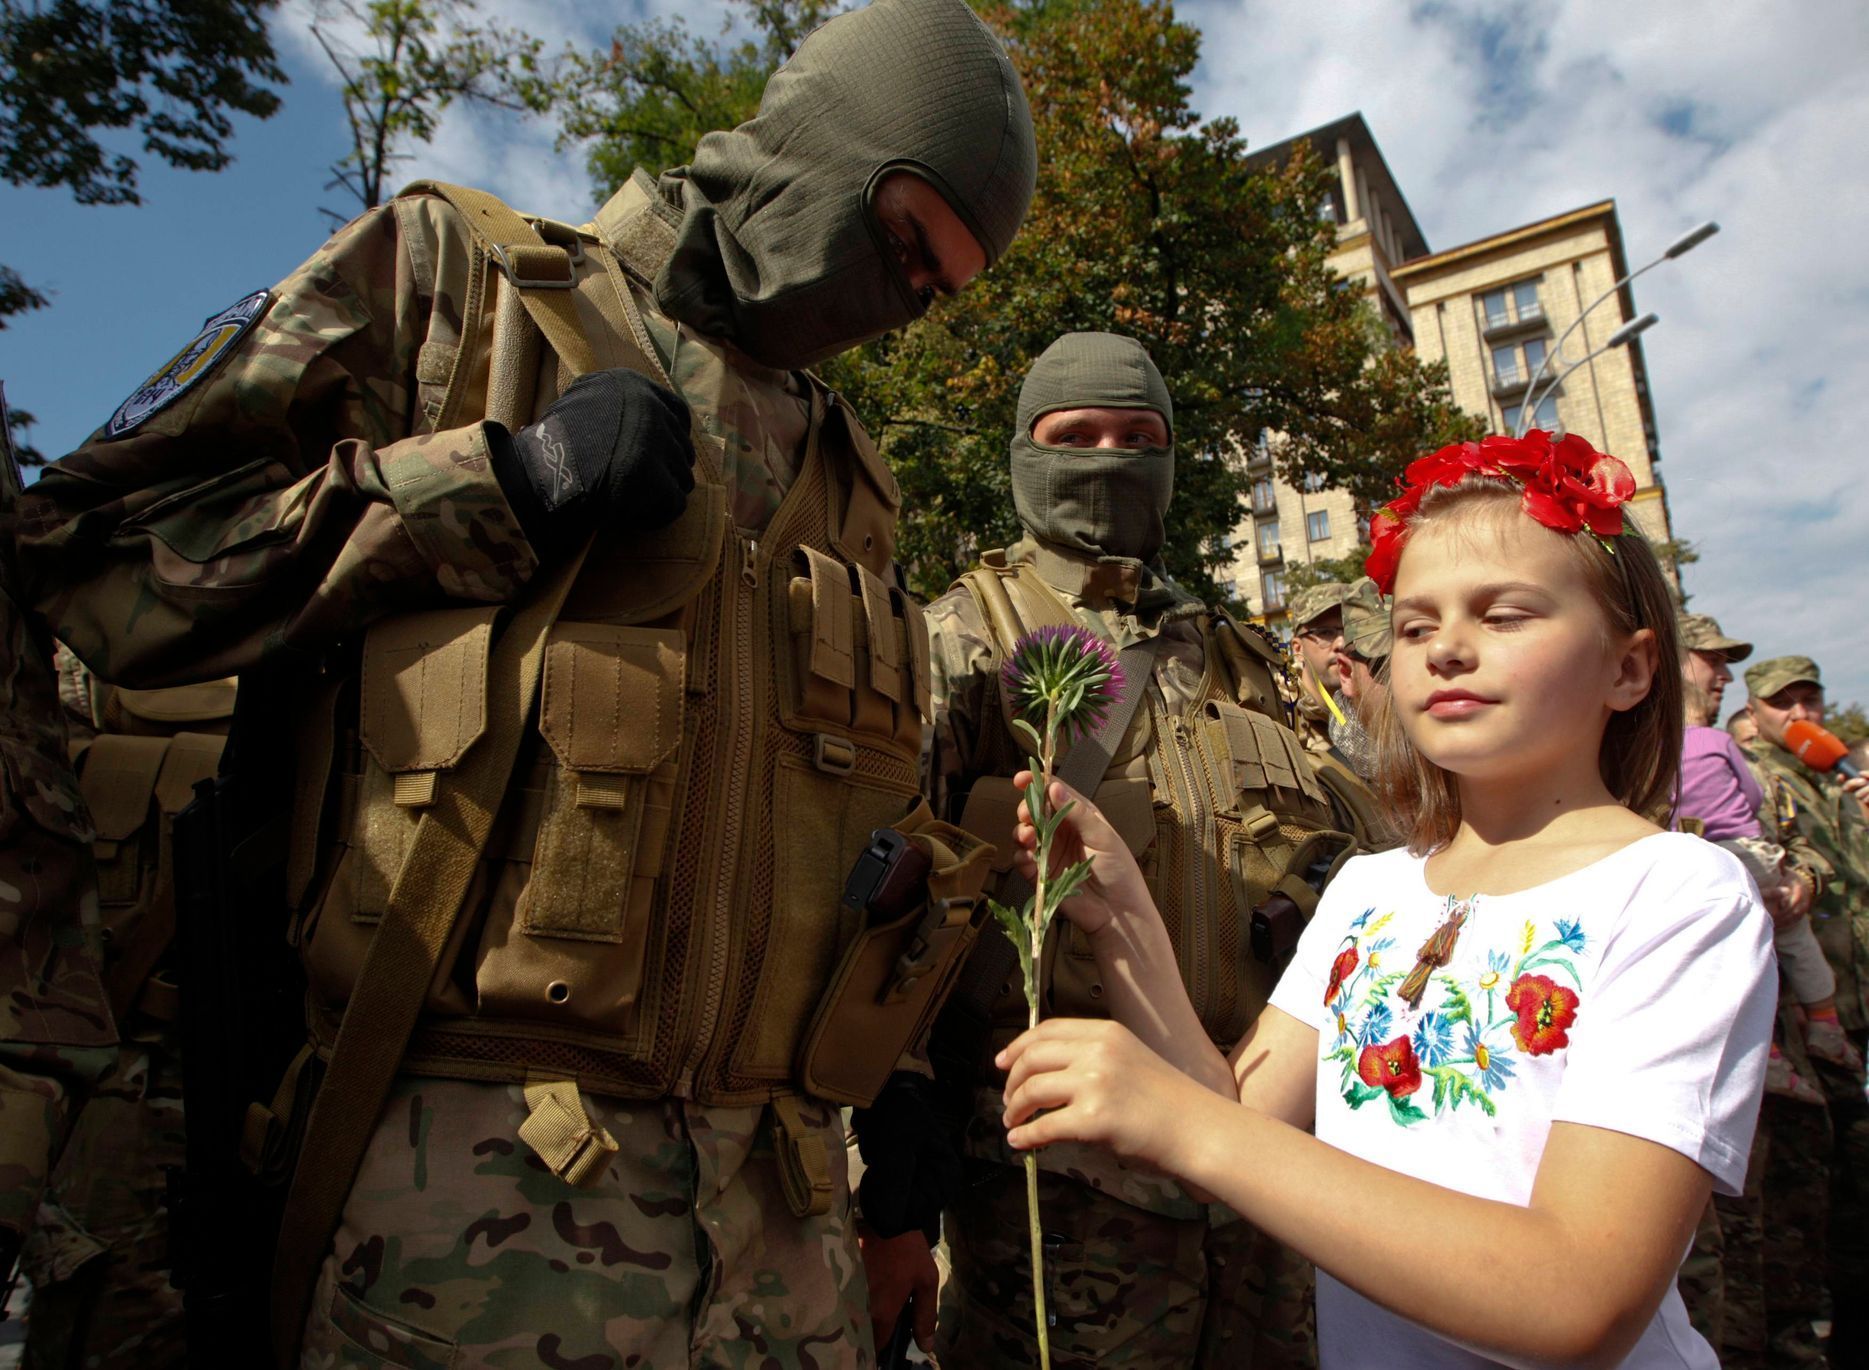 Ukrajina - noví dobrovolníci praporu Sich (26. srpna)